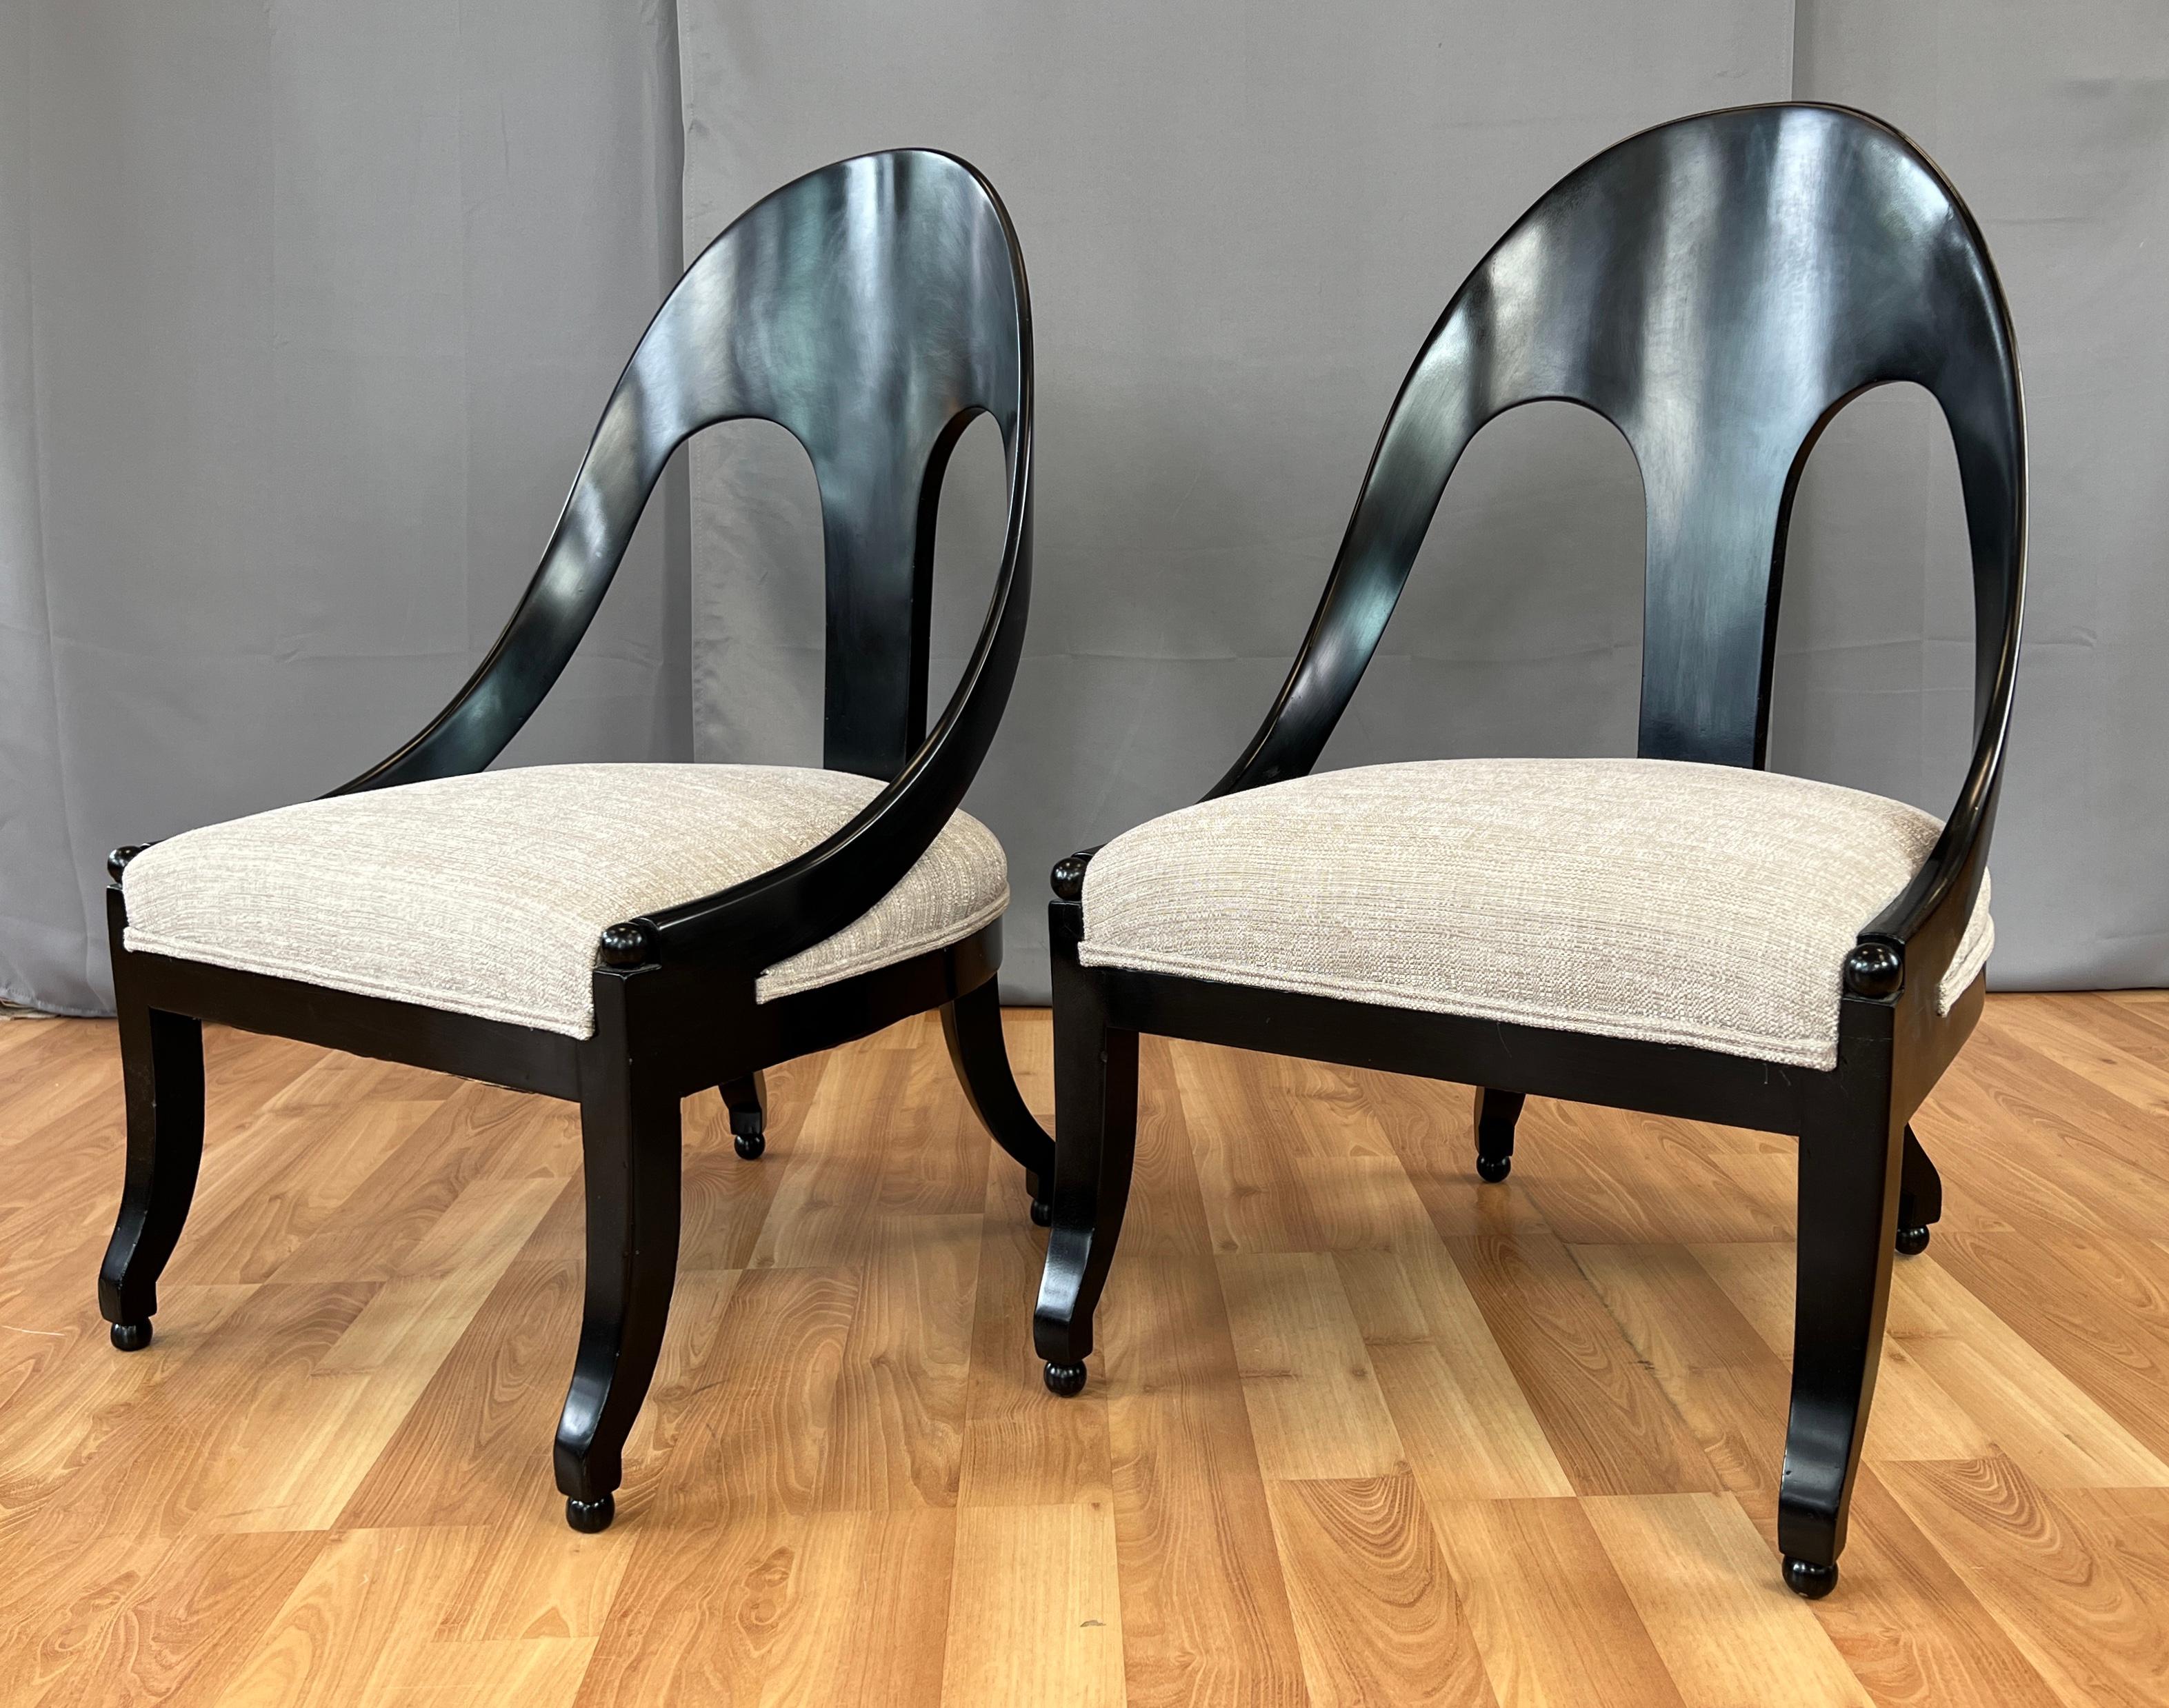 Nous proposons ici une paire de chaises pantoufles à dossier en cuillère de style néoclassique conçues par Michael Taylor pour Baker Furniture.
Cadre noir et revêtement beige qui semble être un mélange de coton lourd. La tapisserie semble être